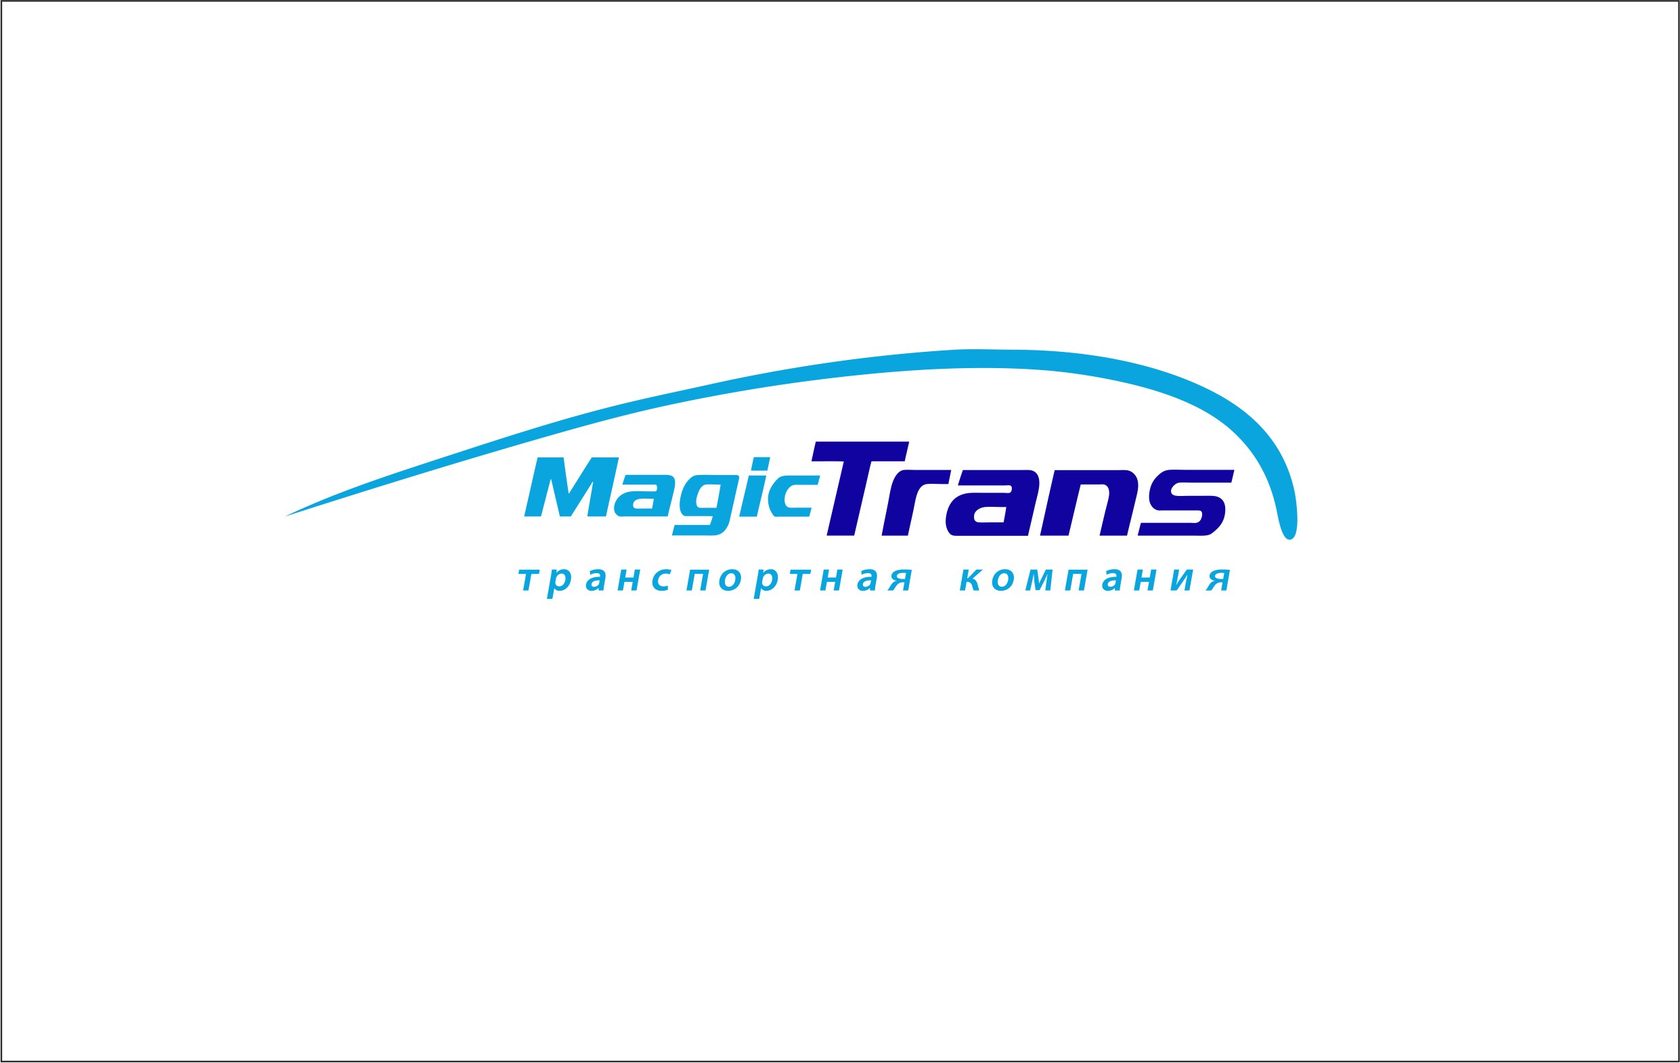 Мейджик краснодар. Мейджик транс транспортная компания. Транспортные логотипы. Эмблема транспортной компании. Транс логотип.